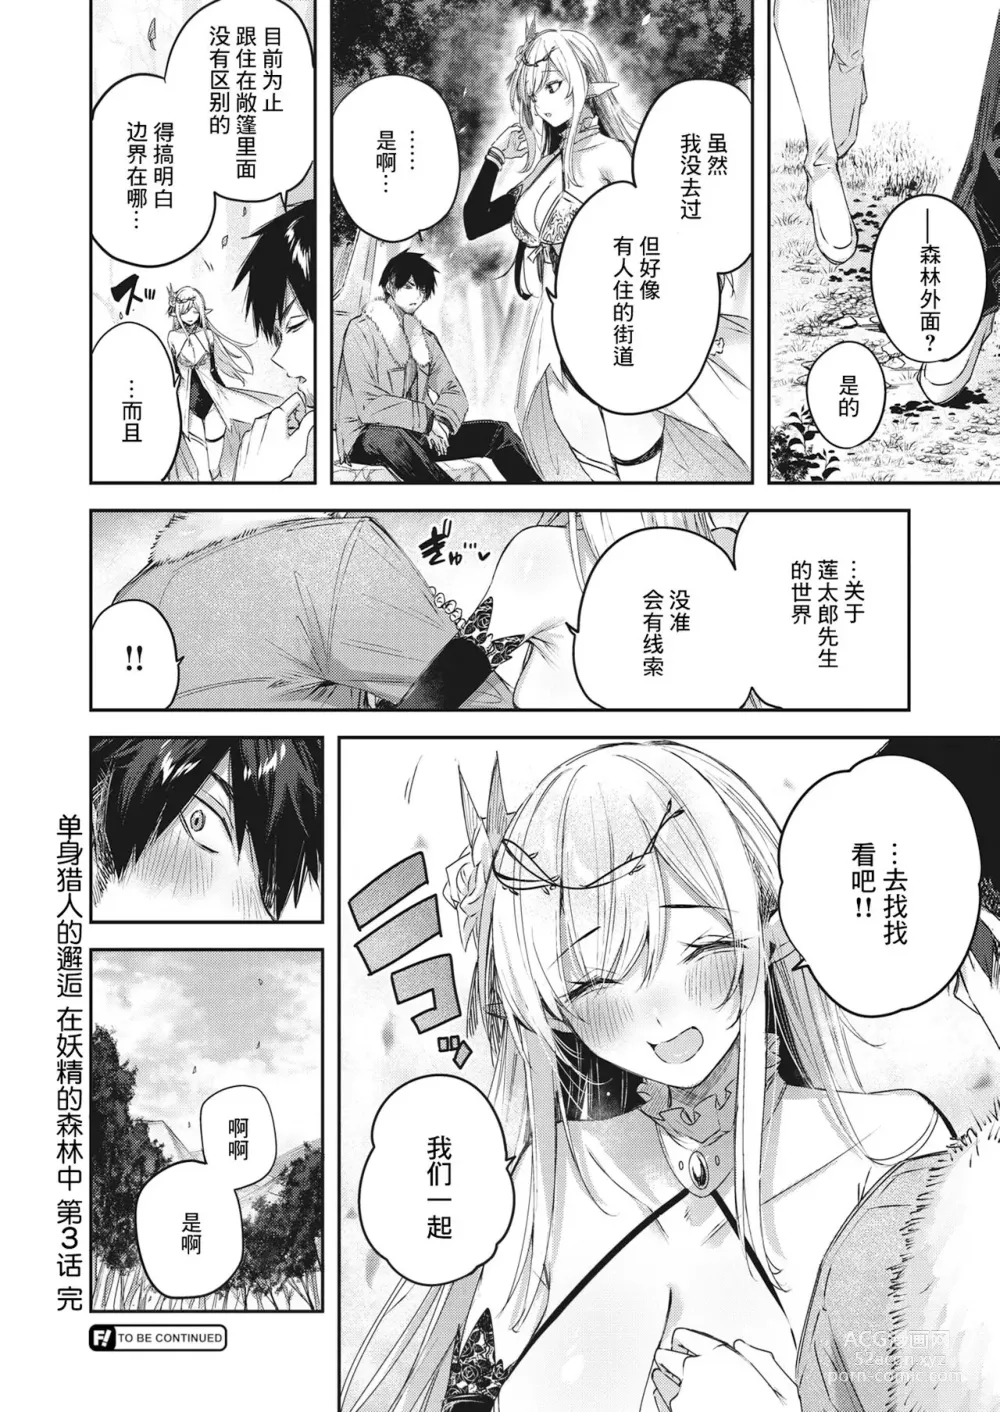 Page 75 of manga Dokushin Hunter no Deai wa Elf no Mori de Ch. 1-3